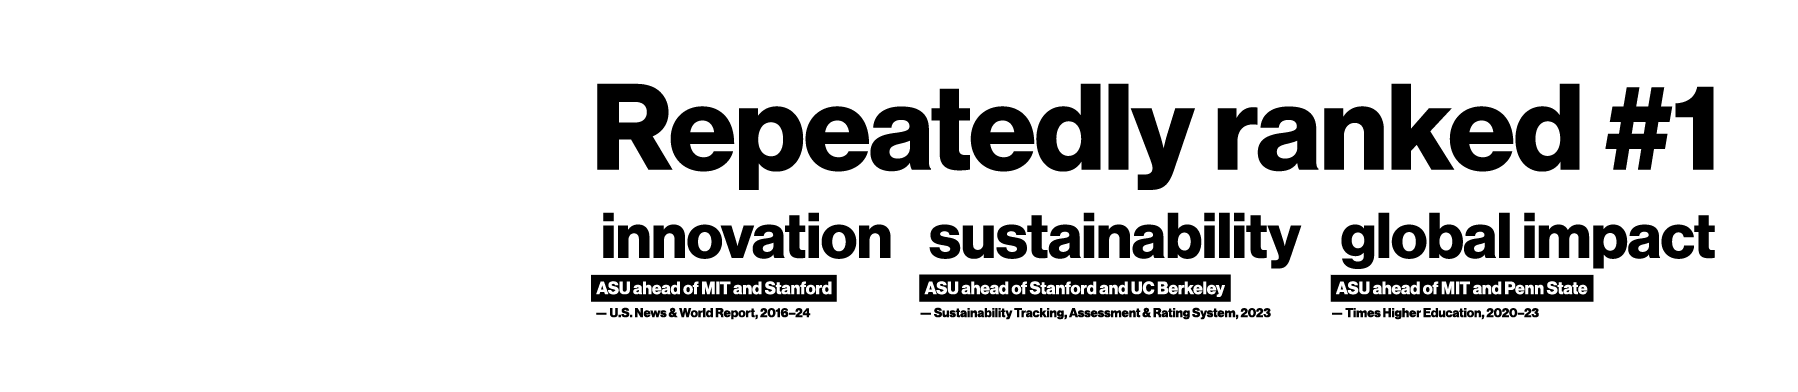 在创新（ASU领先于麻省理工学院和斯坦福大学）、可持续性（ASU超前于斯坦福大学和加州大学伯克利分校）和全球影响力（ASU先于麻省理工学院和宾夕法尼亚州立大学）方面屡次排名第一